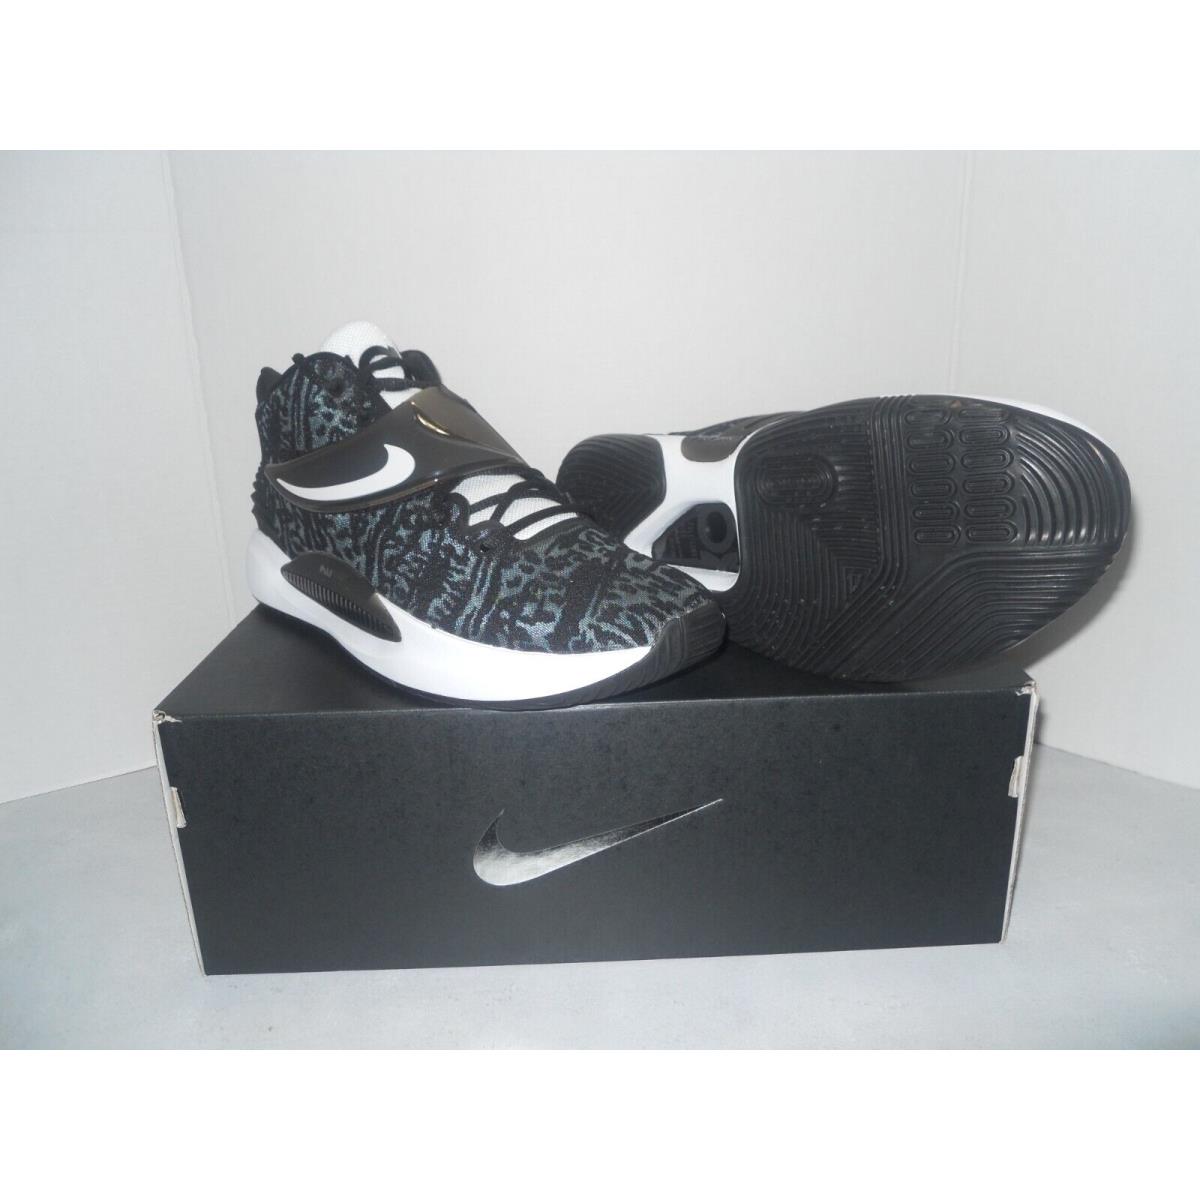 Nike shoes PROMO - Black 5